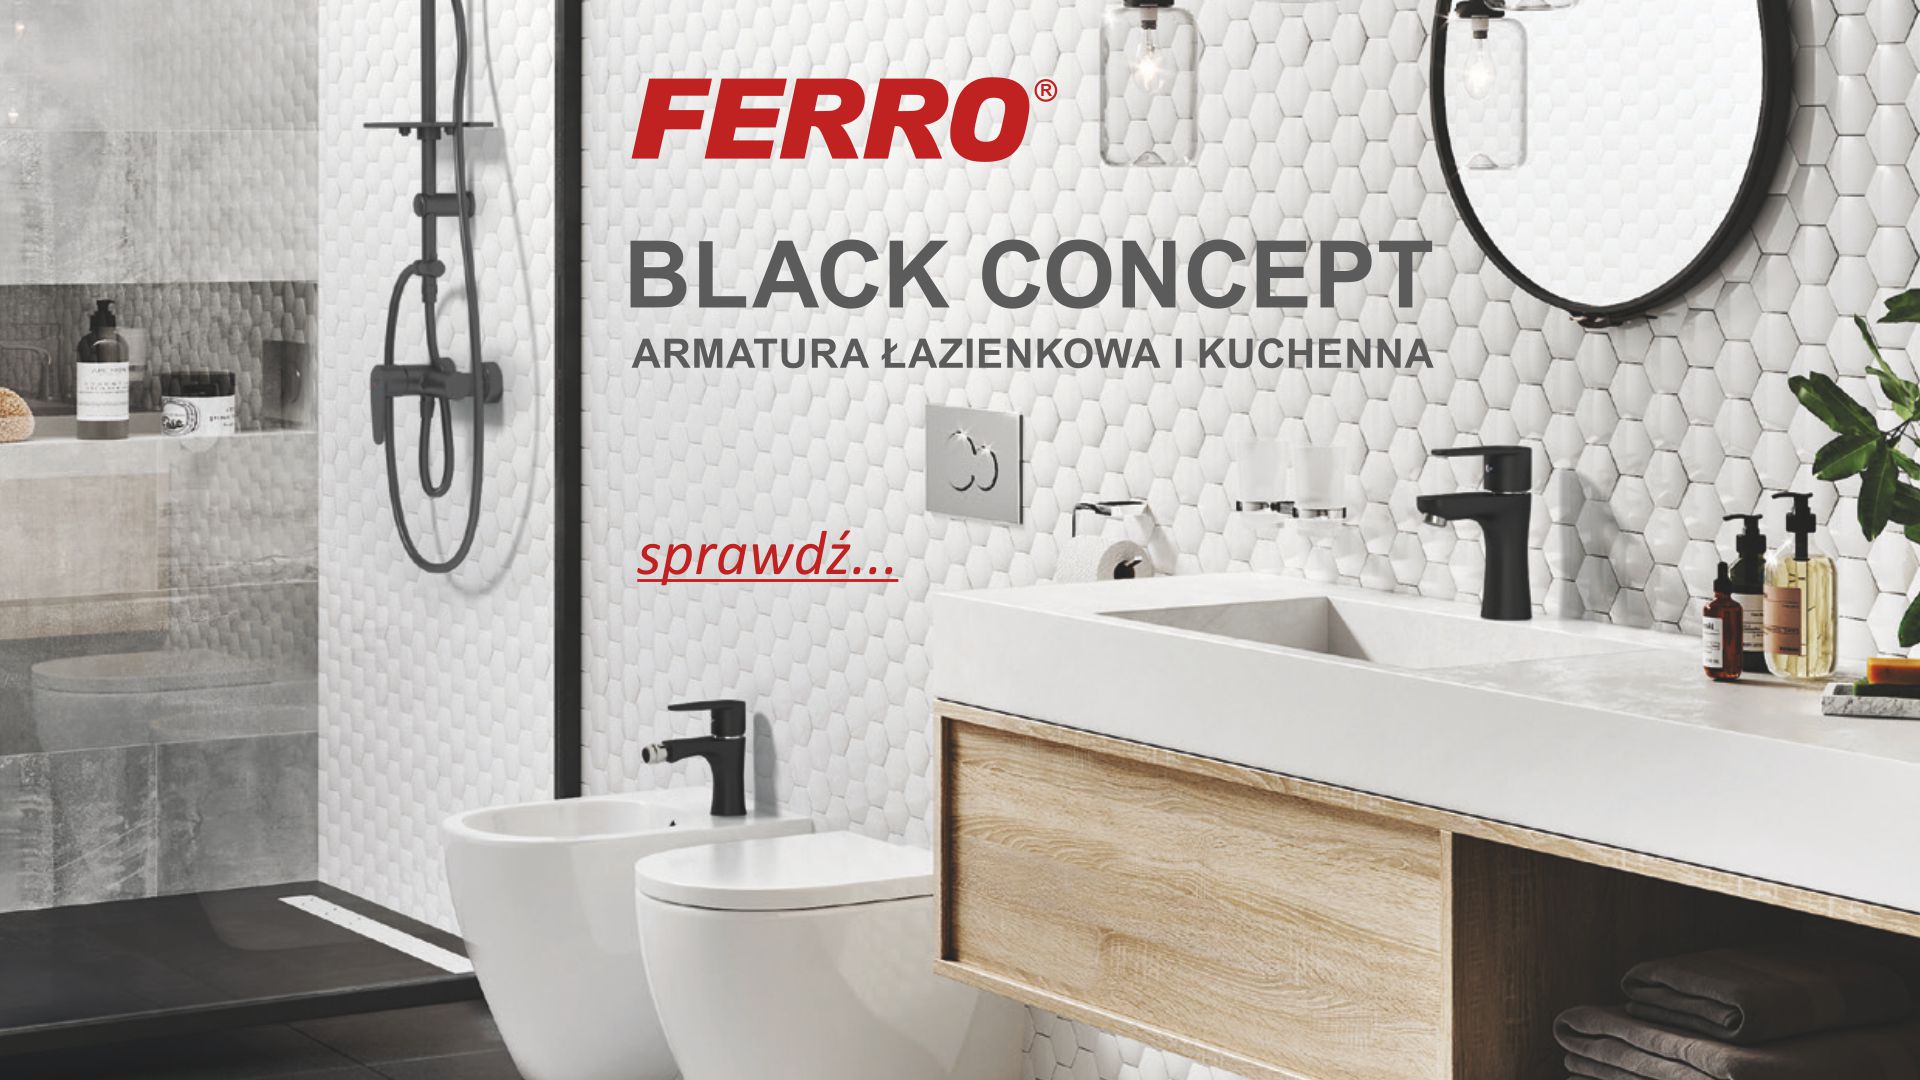 FERRO - Black Concept